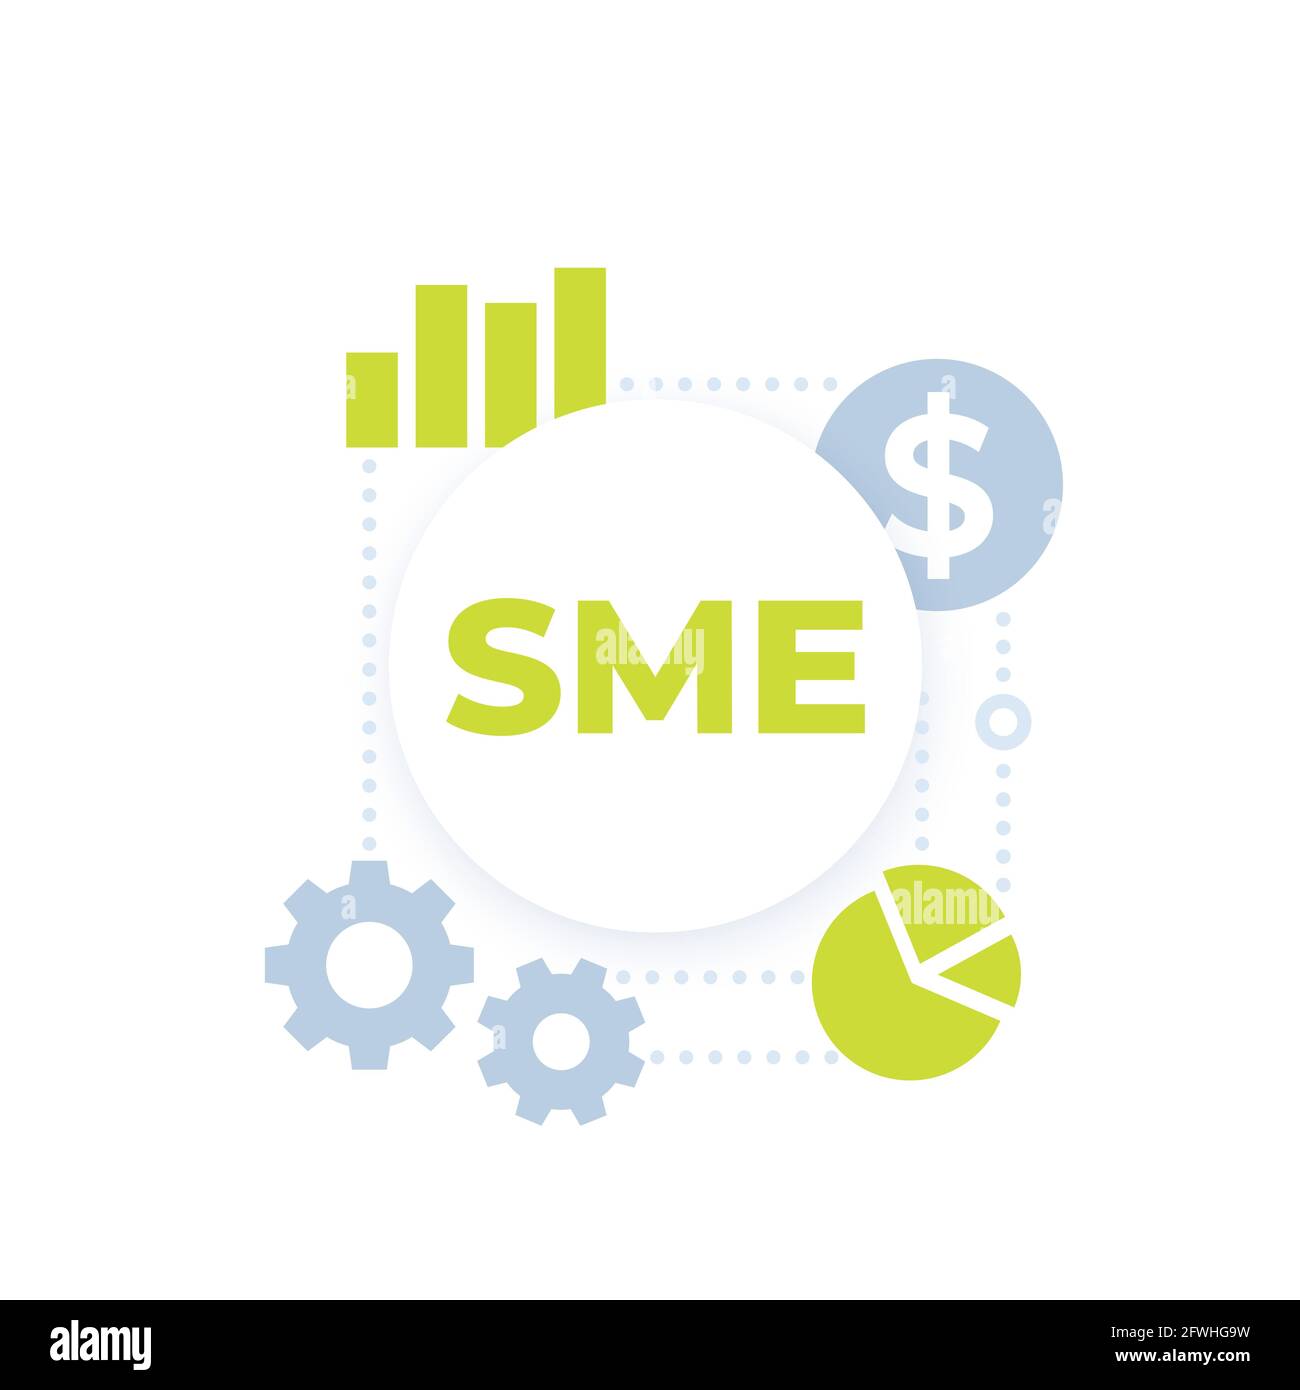 SME, small and medium enterprise vector icon Stock Vector Image & Art ...